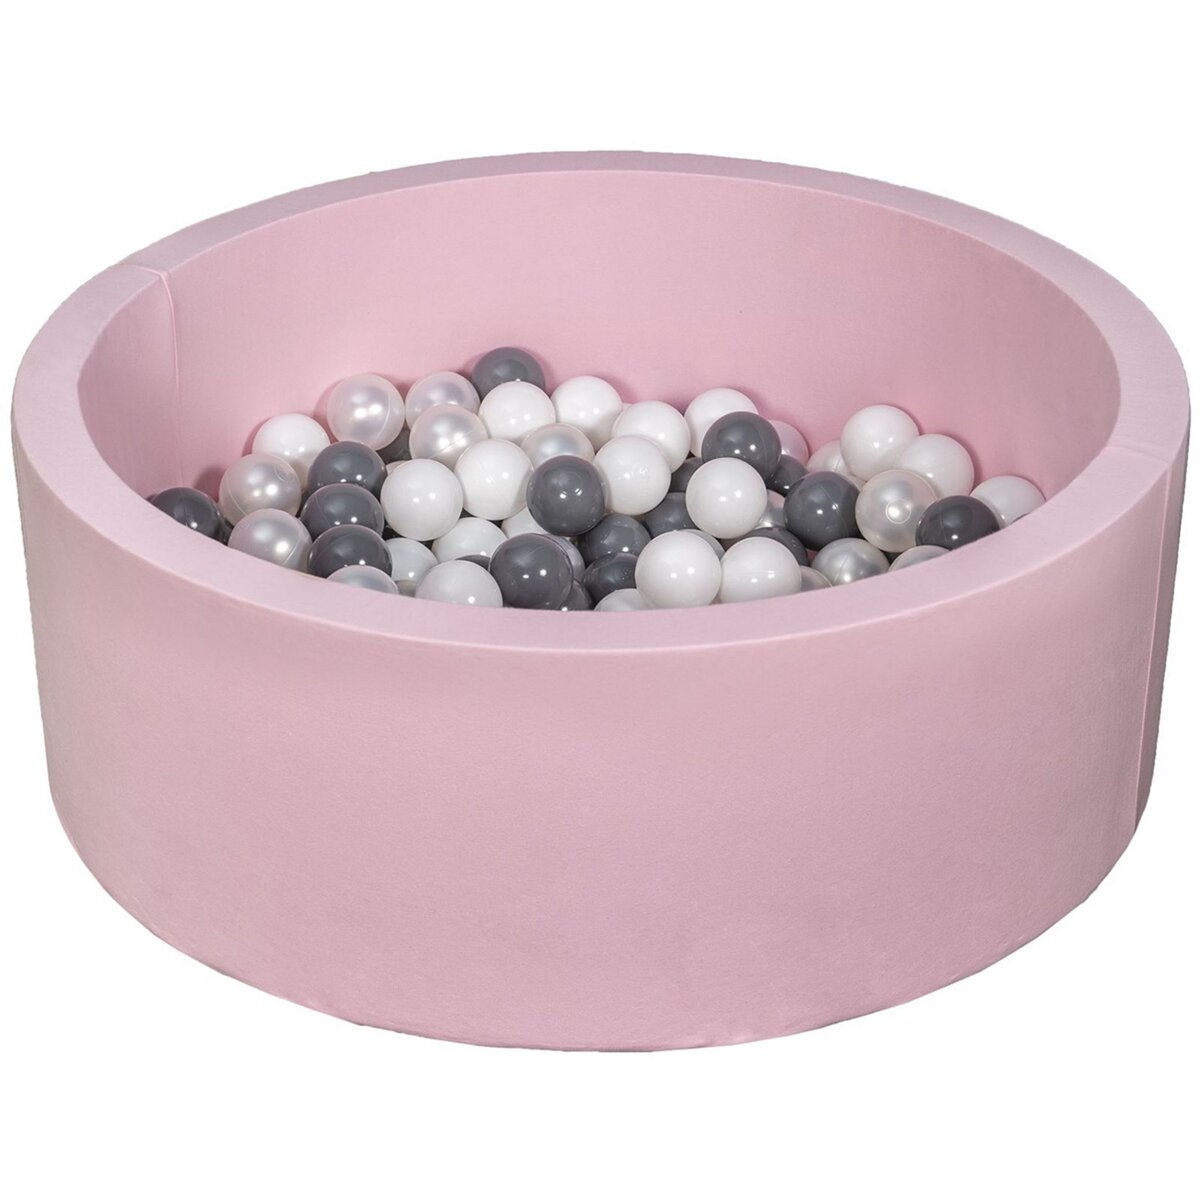  Piscine à balles Aire de jeu + 150 balles rose blanc, perle, gris